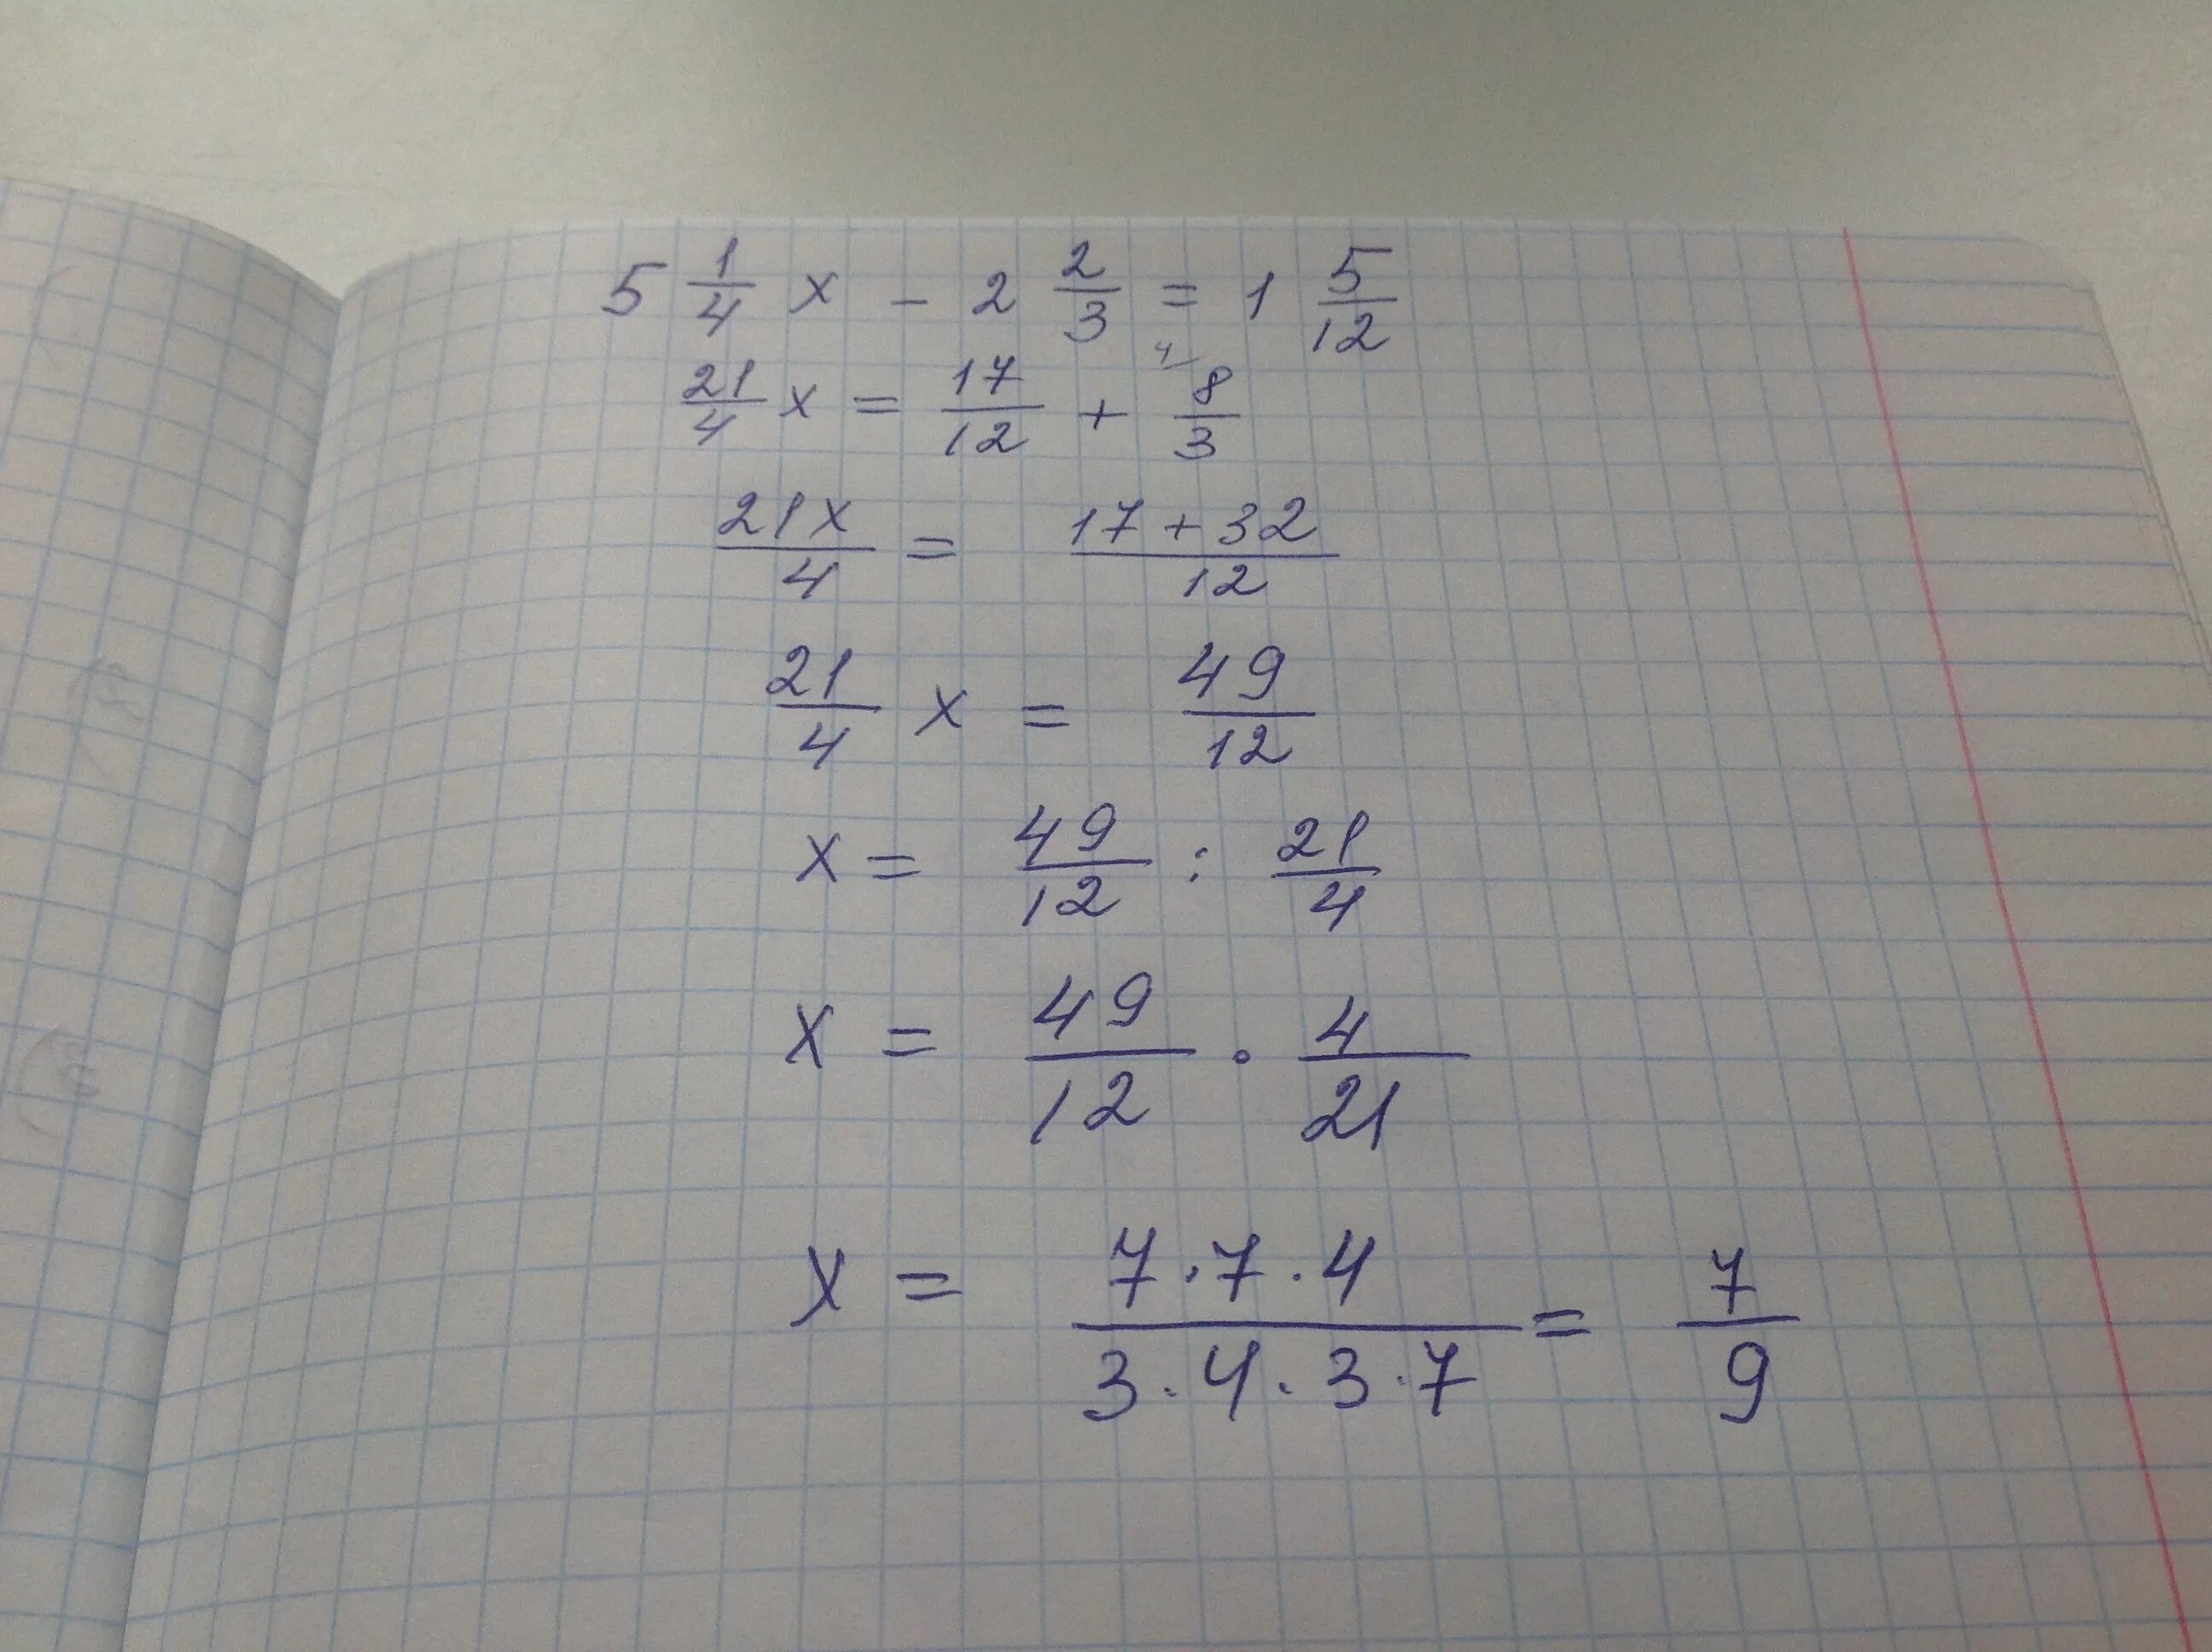 3x/5-x+1/2=1. X-4/7x=1, 2/5 решение. 4x+4/3x 2+2x-1. 2 2/9 X 7 1/5 + 11/12 X 7 1/5 - 7 1/5 Х 1 3/4. 0 25 0 12 ответ